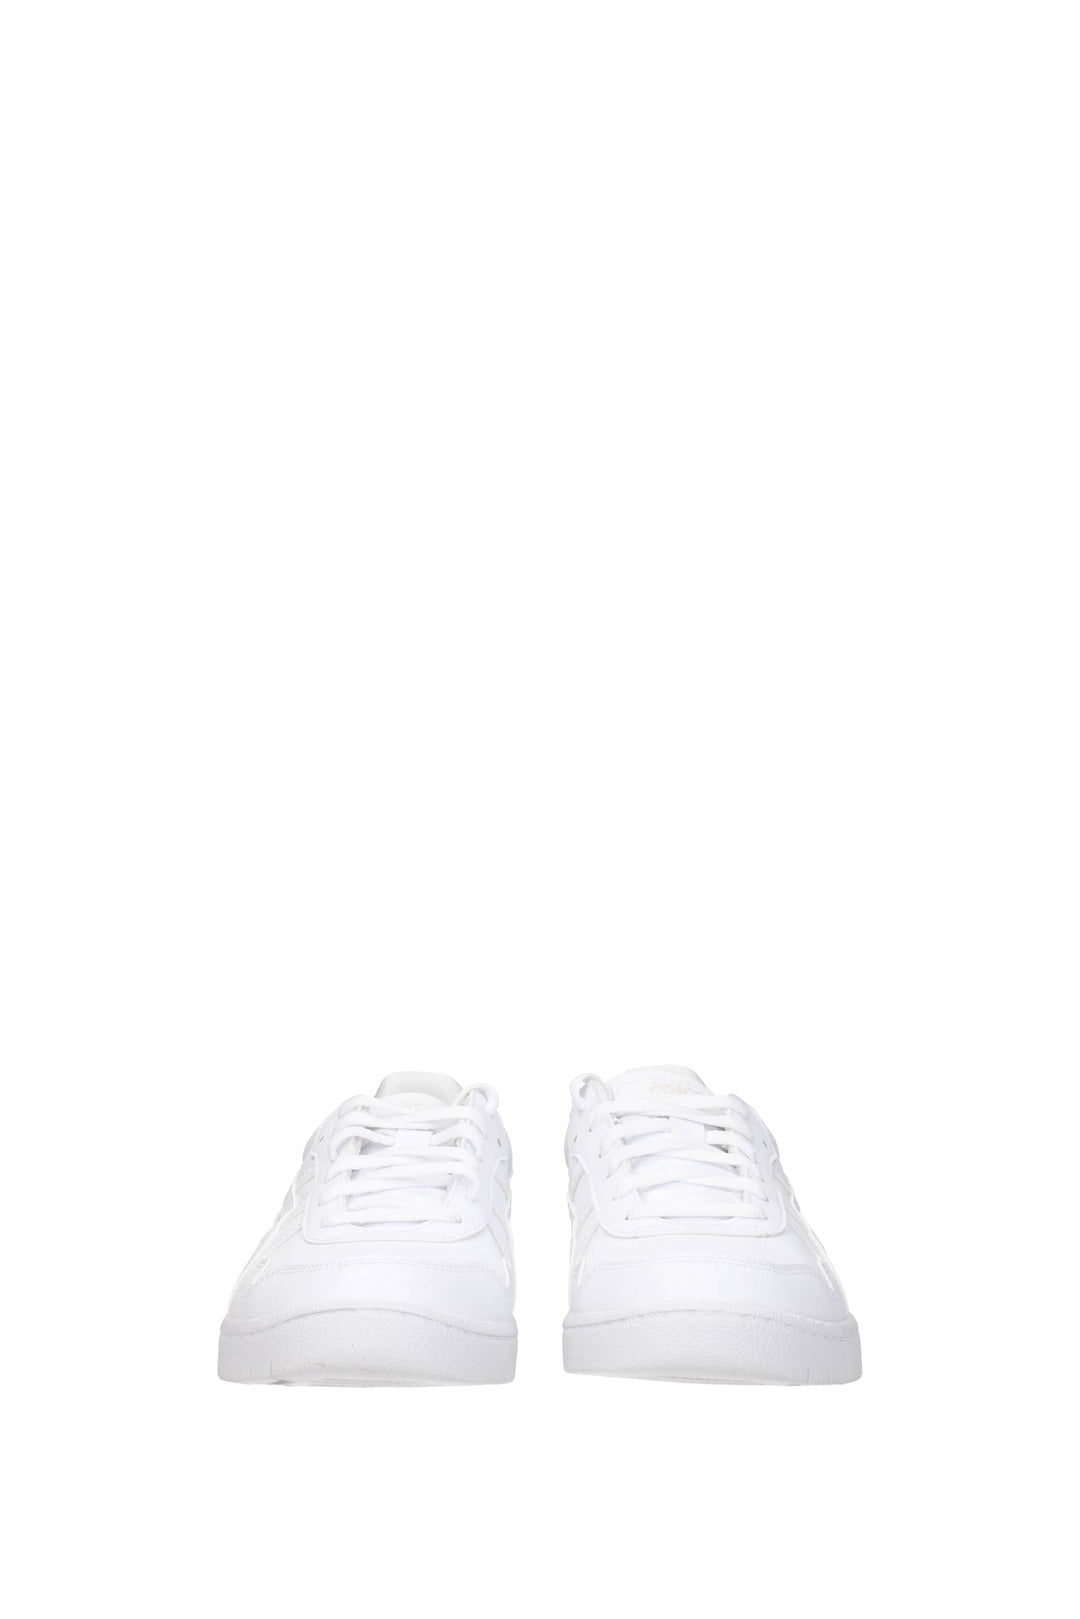 Comme Des Garçon Sneakers Asics Japan S Eco Pelle Bianco Bianco Ottico - Comme Des Garçons - Uomo